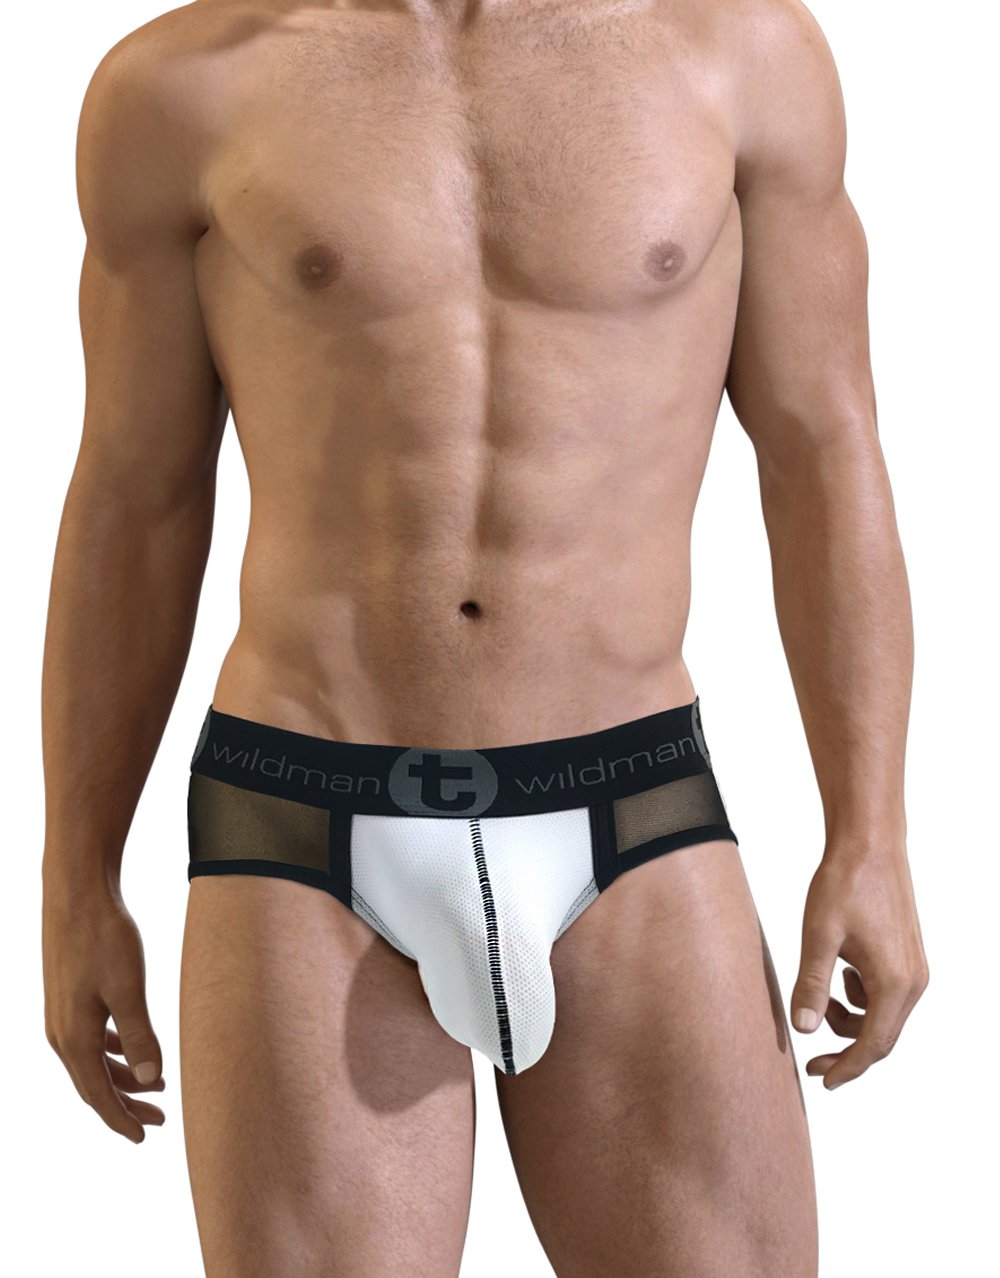 Underwear Review – WildmanT Slut Big Boy Pouch Brief – Underwear News Briefs